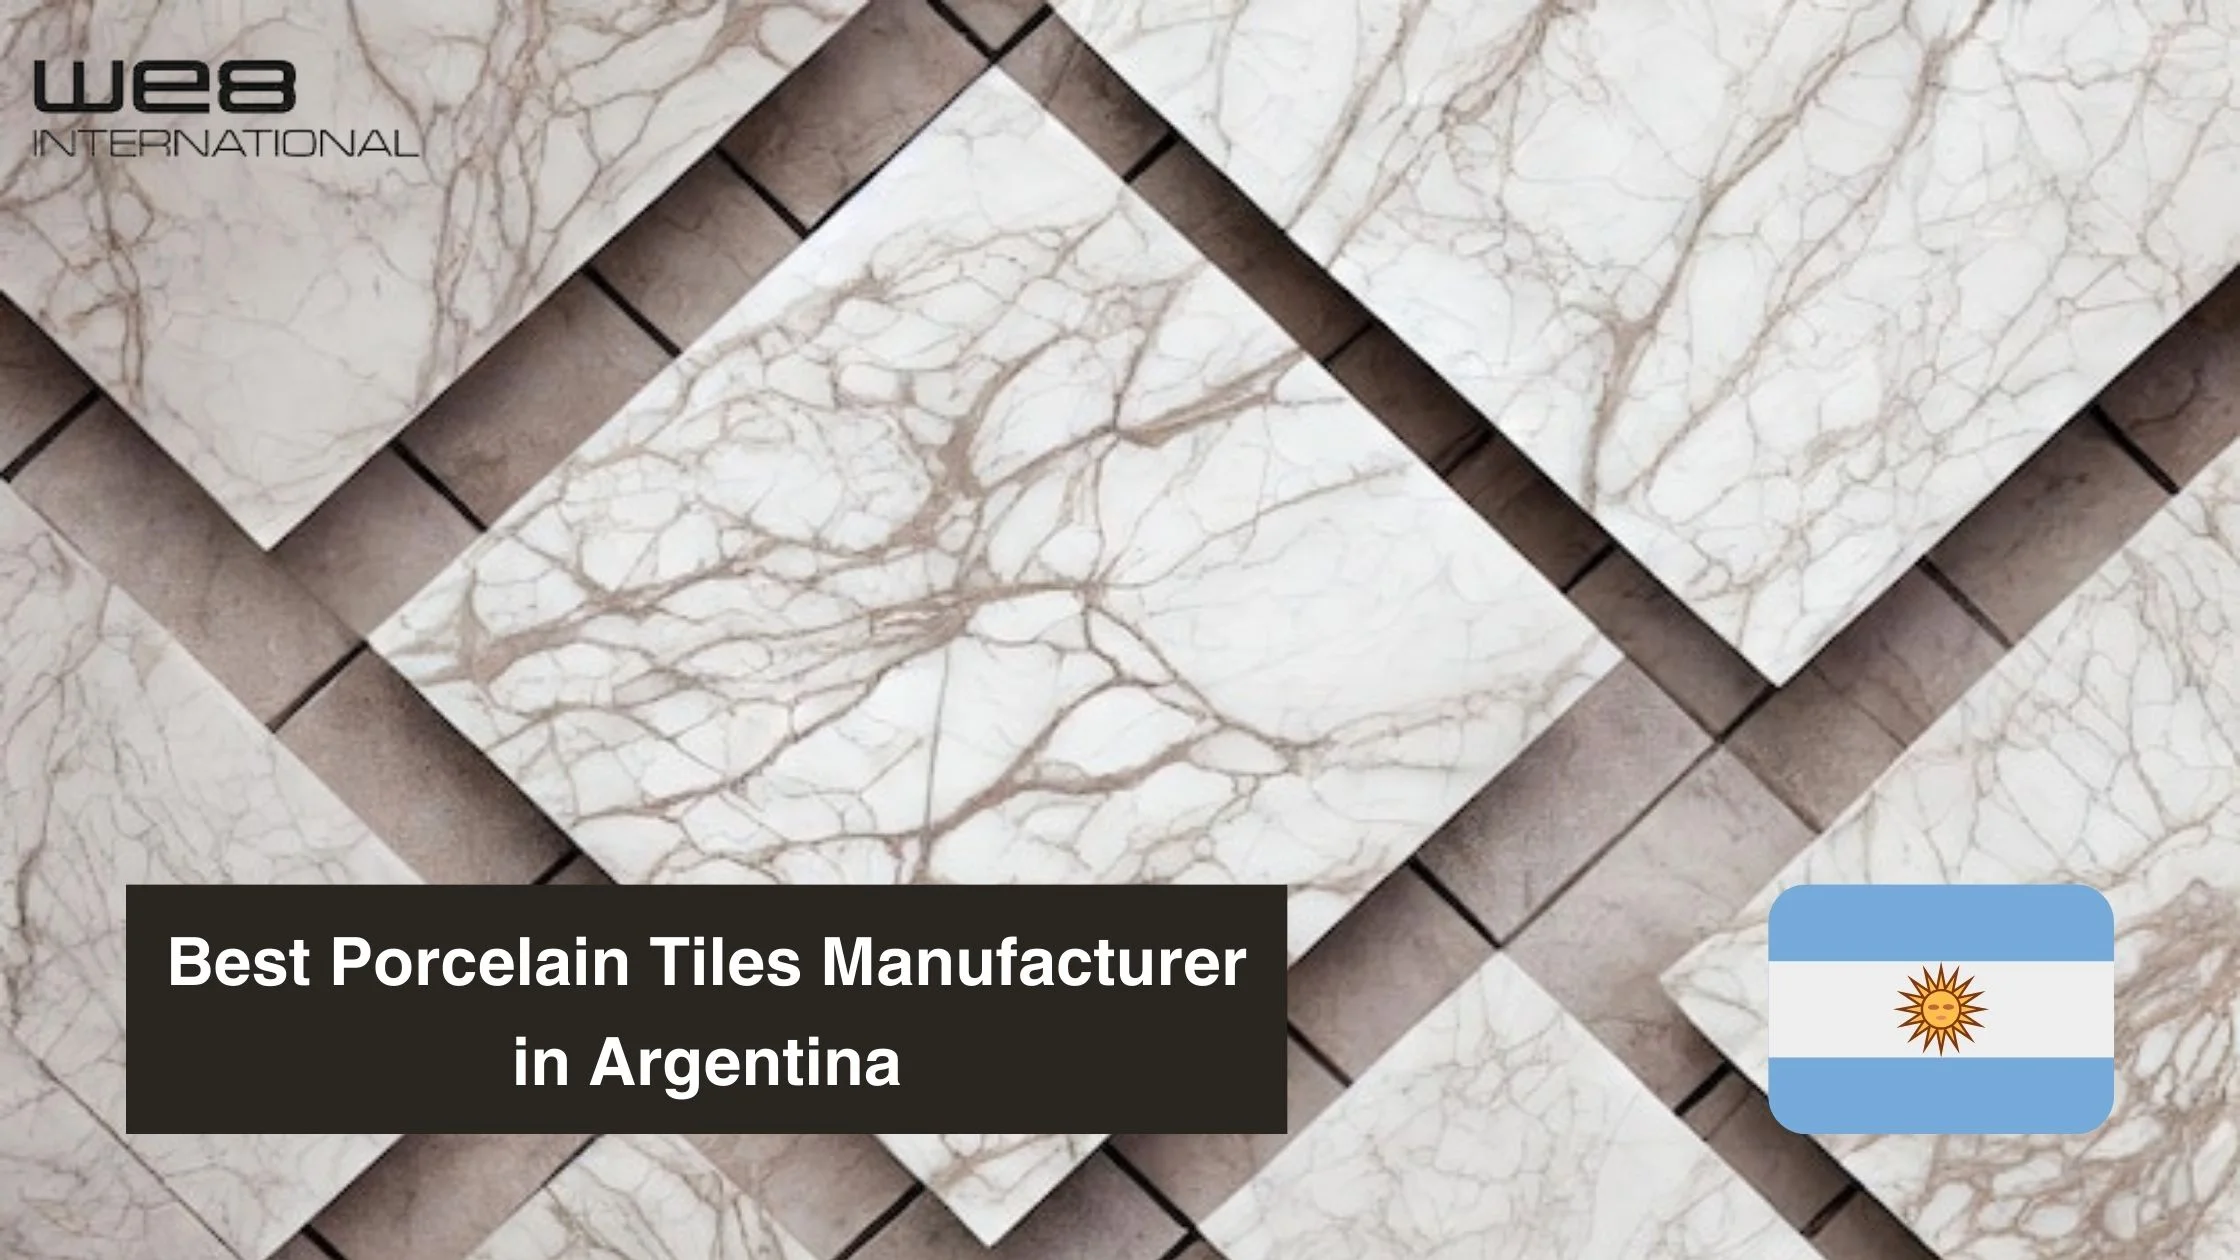 Best Porcelain Tiles Manufacturer in Argentina